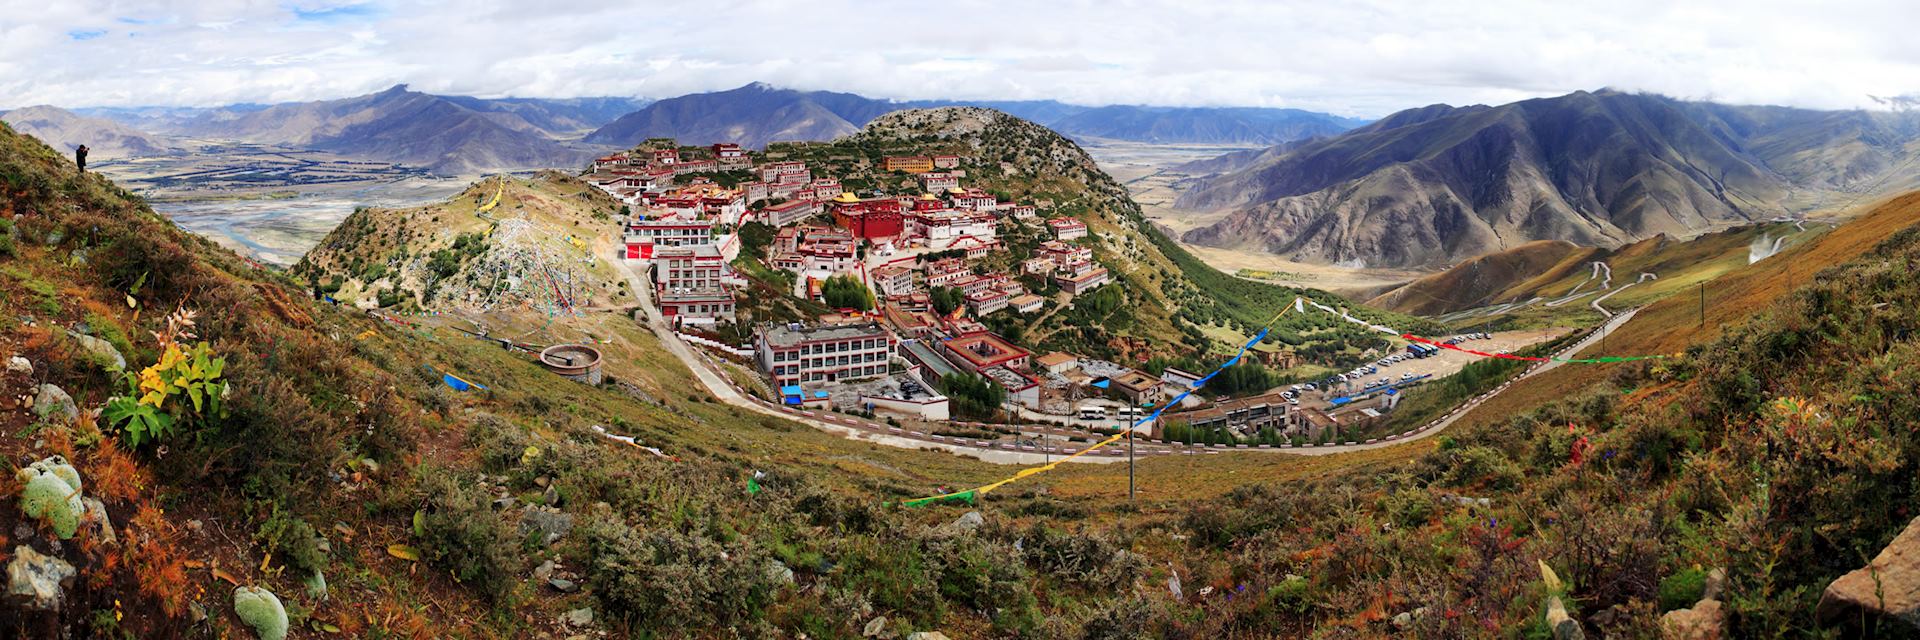 Ganden Monastery in Tibet